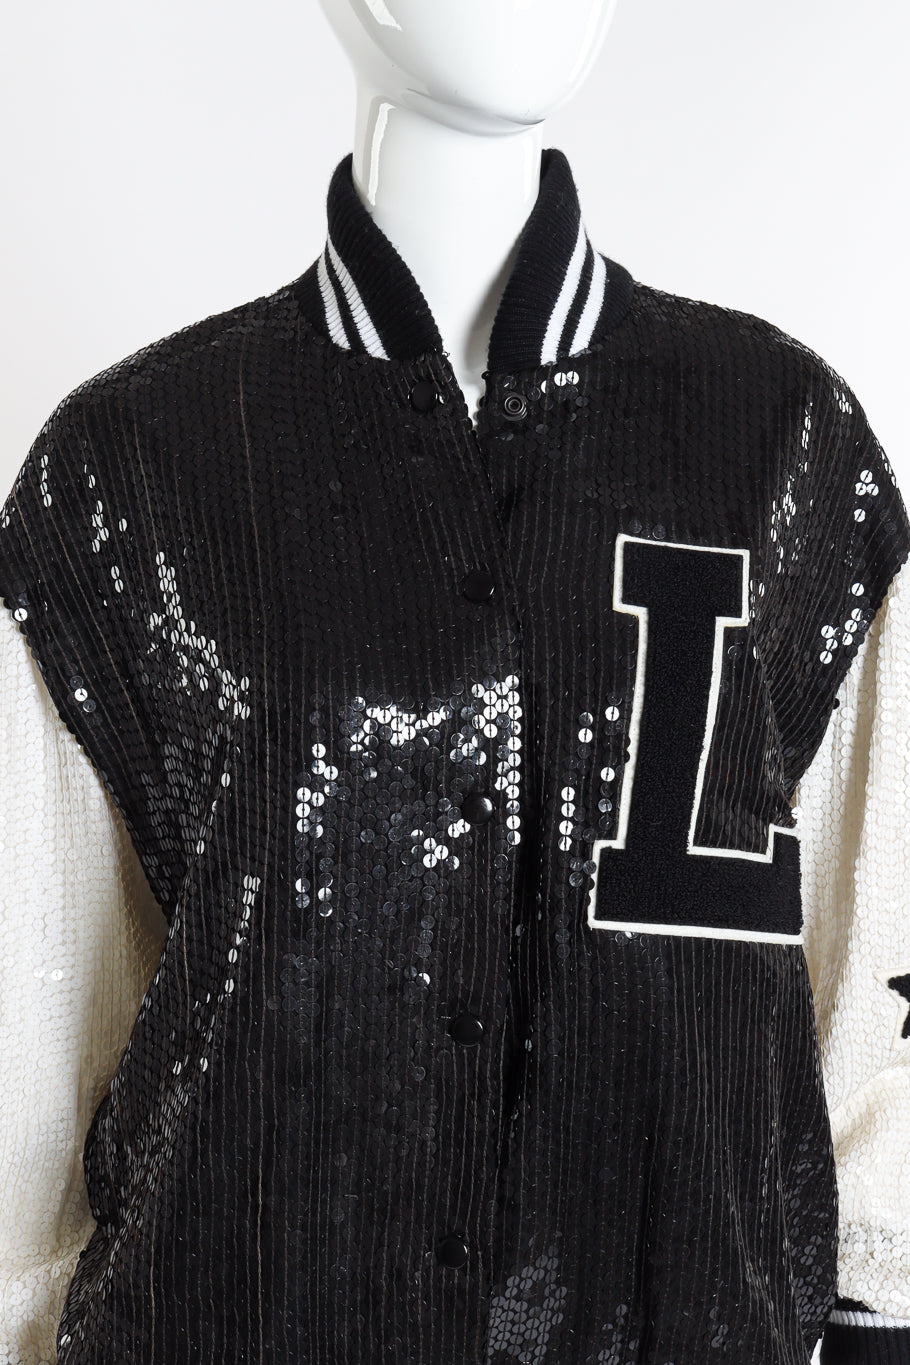 Vintage Jeanette for St. Martin Sequined Letterman Bomber Jacket front on mannequin closeup @recessla